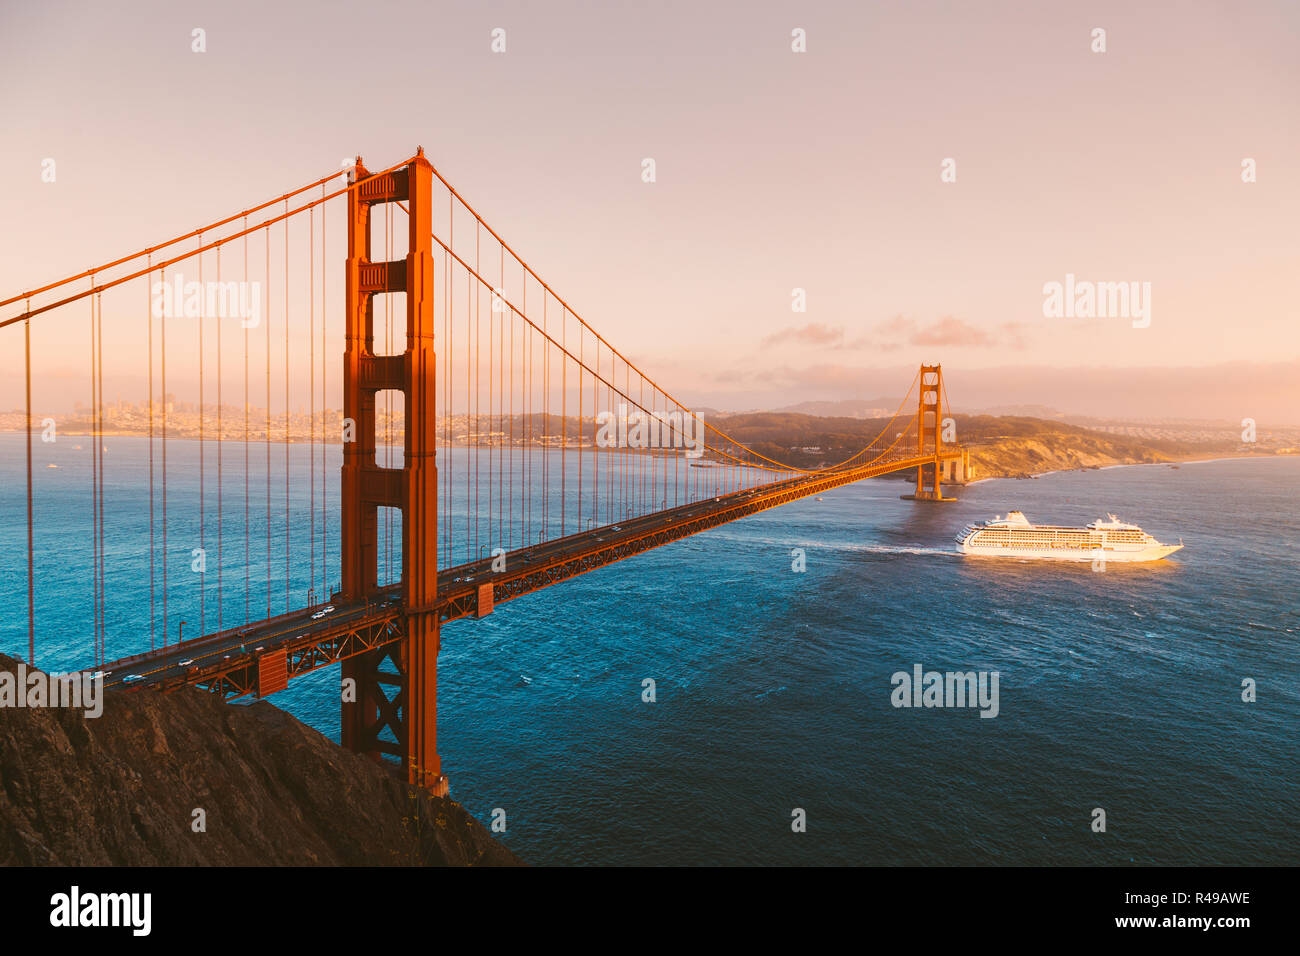 Bella vista panoramica della nave da crociera passando famoso Golden Gate Bridge con lo skyline di San Francisco in background al tramonto, California, US Foto Stock